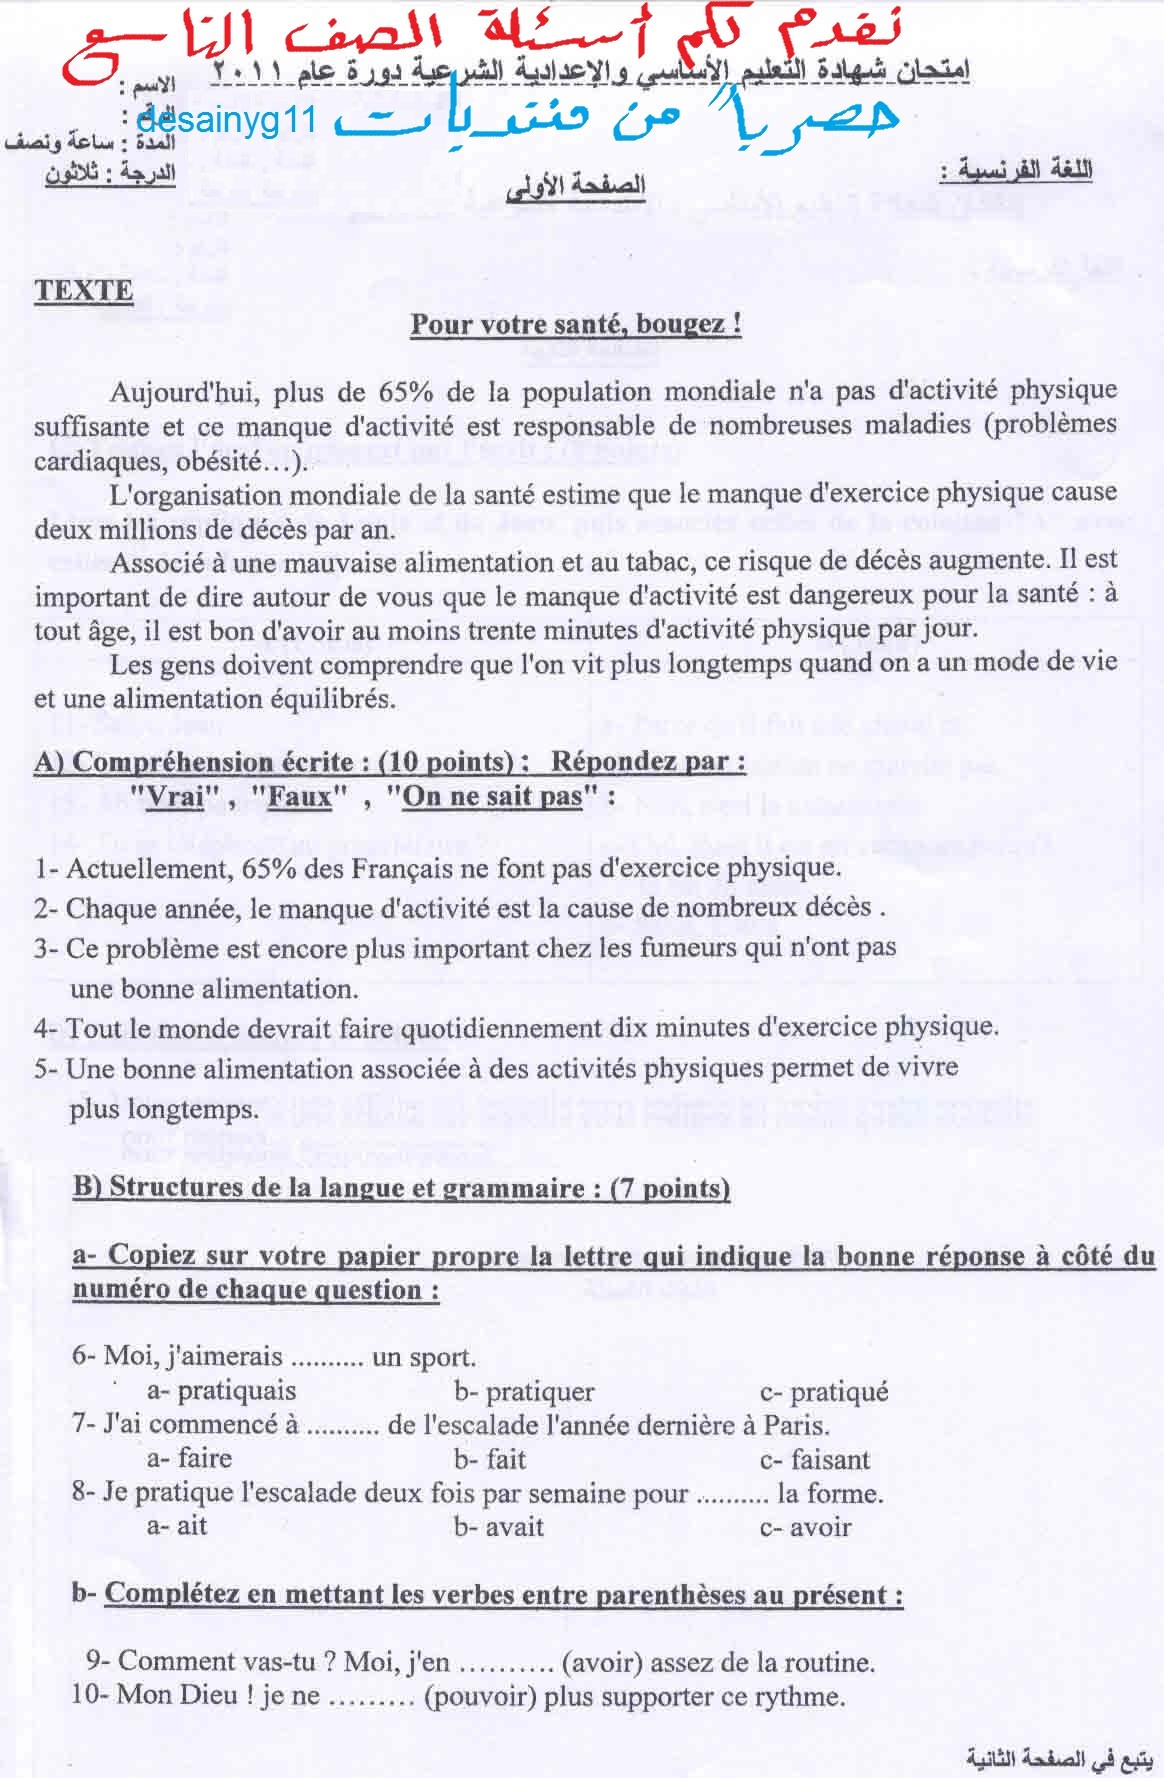 ورقة امتحان الفرنسي + أجوبة مادة اللغة الفرنسية للصف التاسع 2011 Uouous10